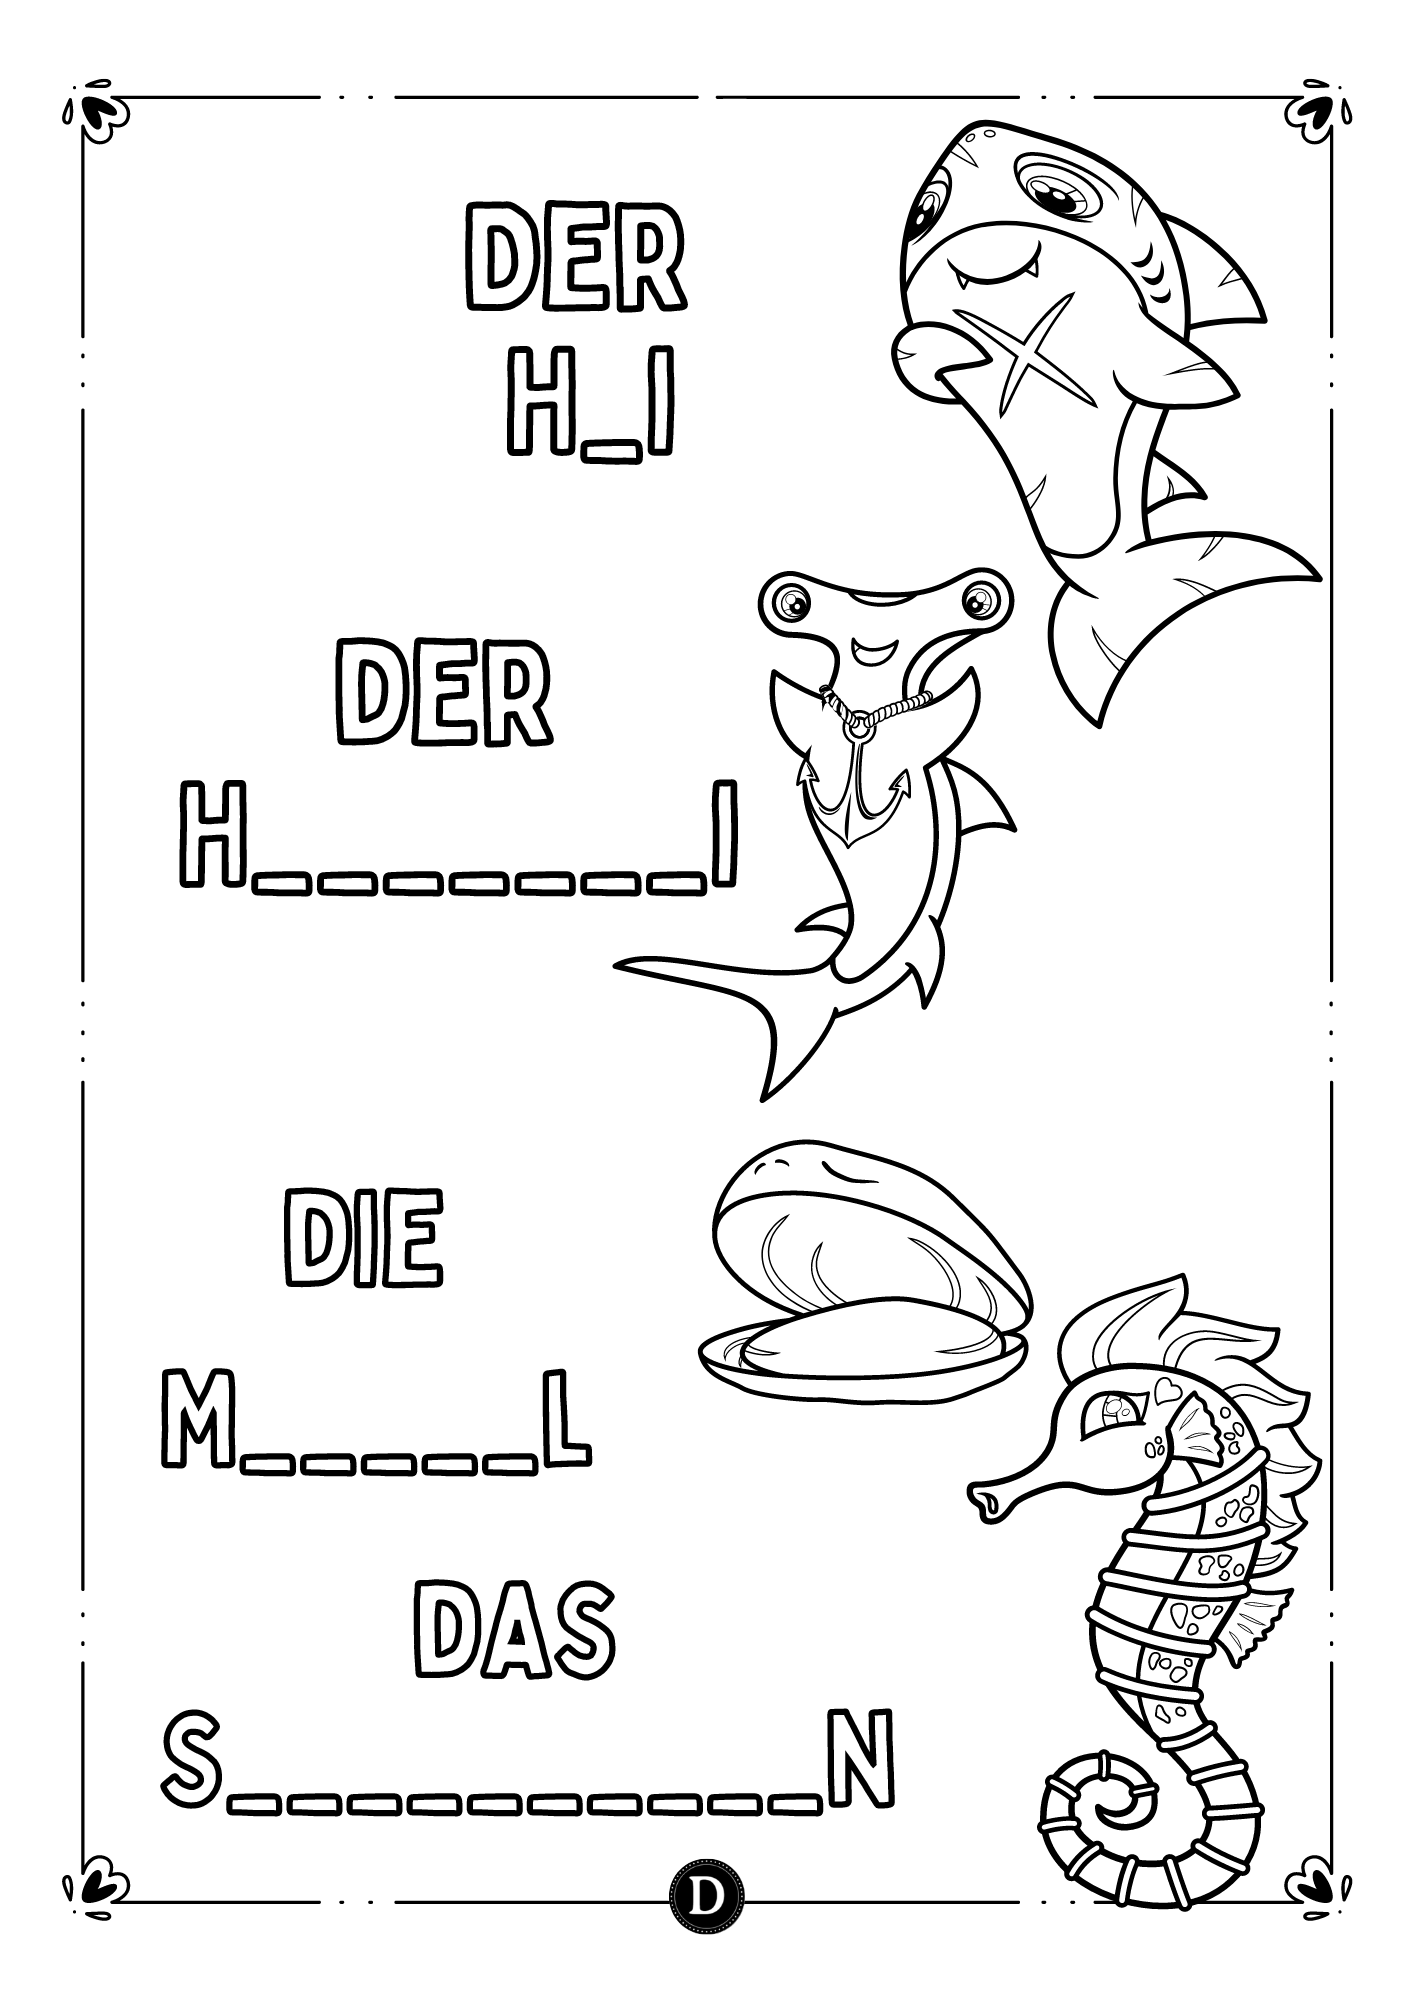 Работни листове за оцветяване - Морските животни на два езика